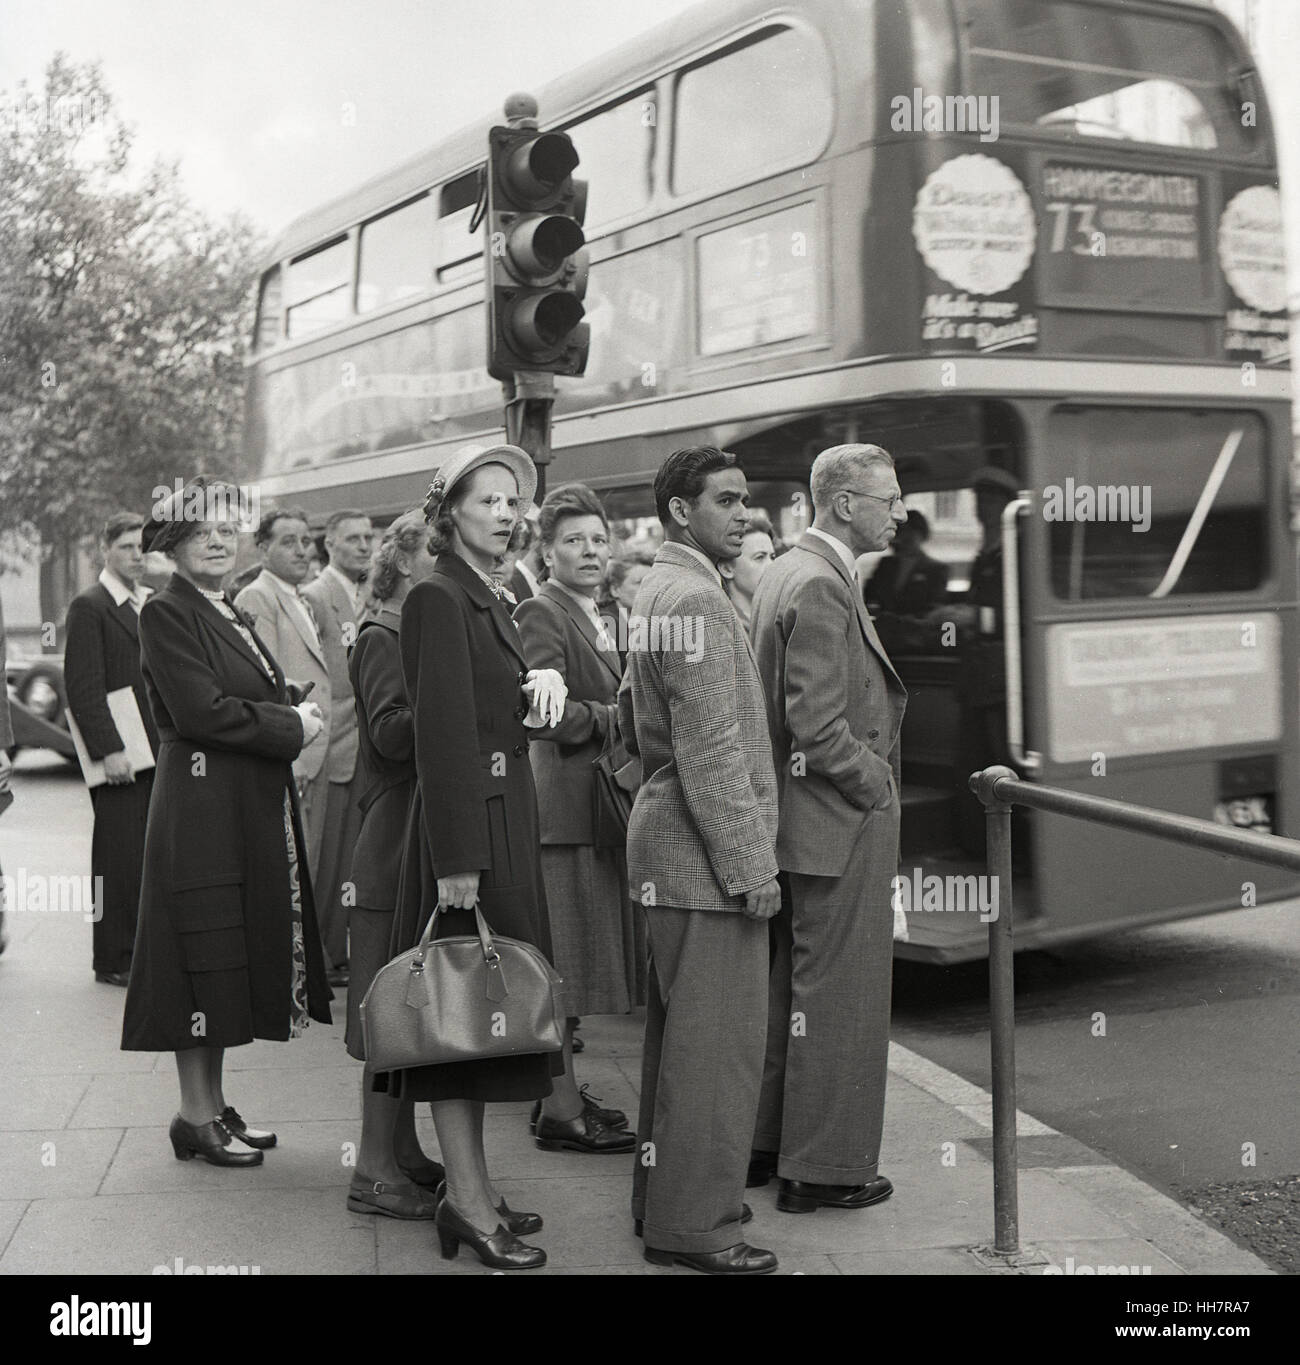 1950, historiques, nouvellement arrivés à l'étranger étudiant indien à l'Institut de l'éducation (OIE) attend avec d'autres britanniques pour un bus, Londres, Angleterre. Banque D'Images